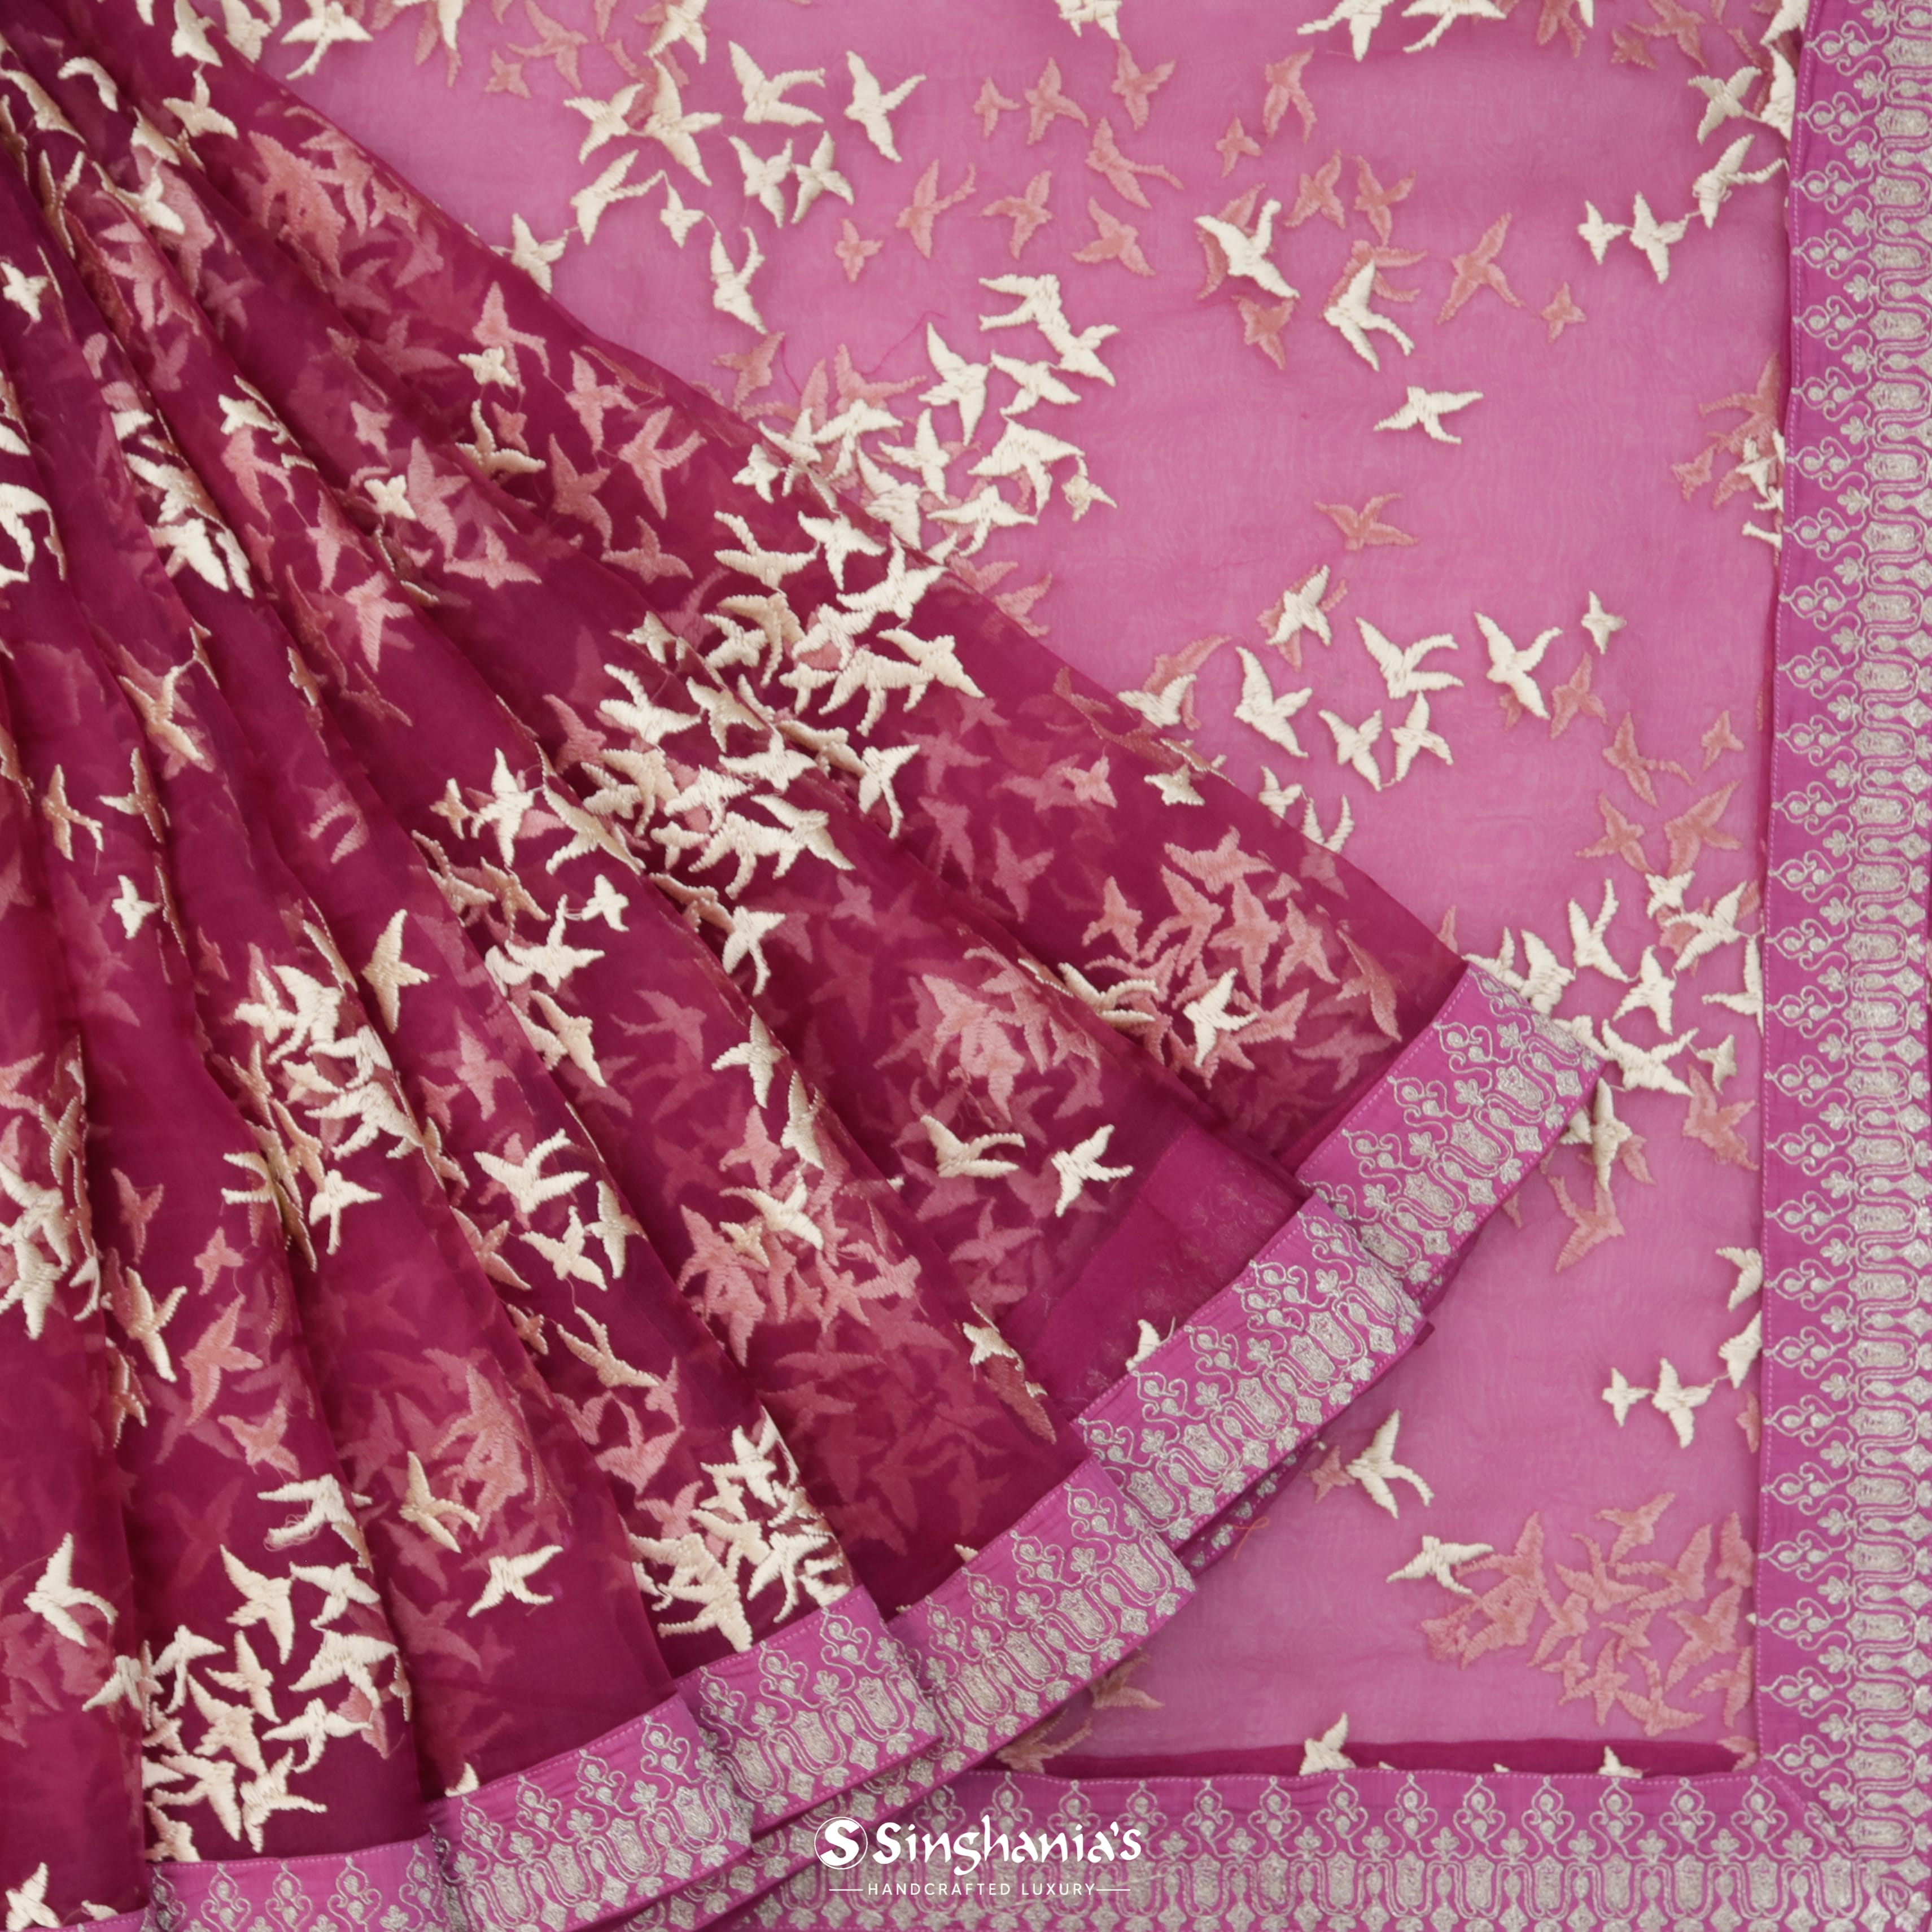 Deep Magenta Pink Organza Printed Saree With Bird Motifs